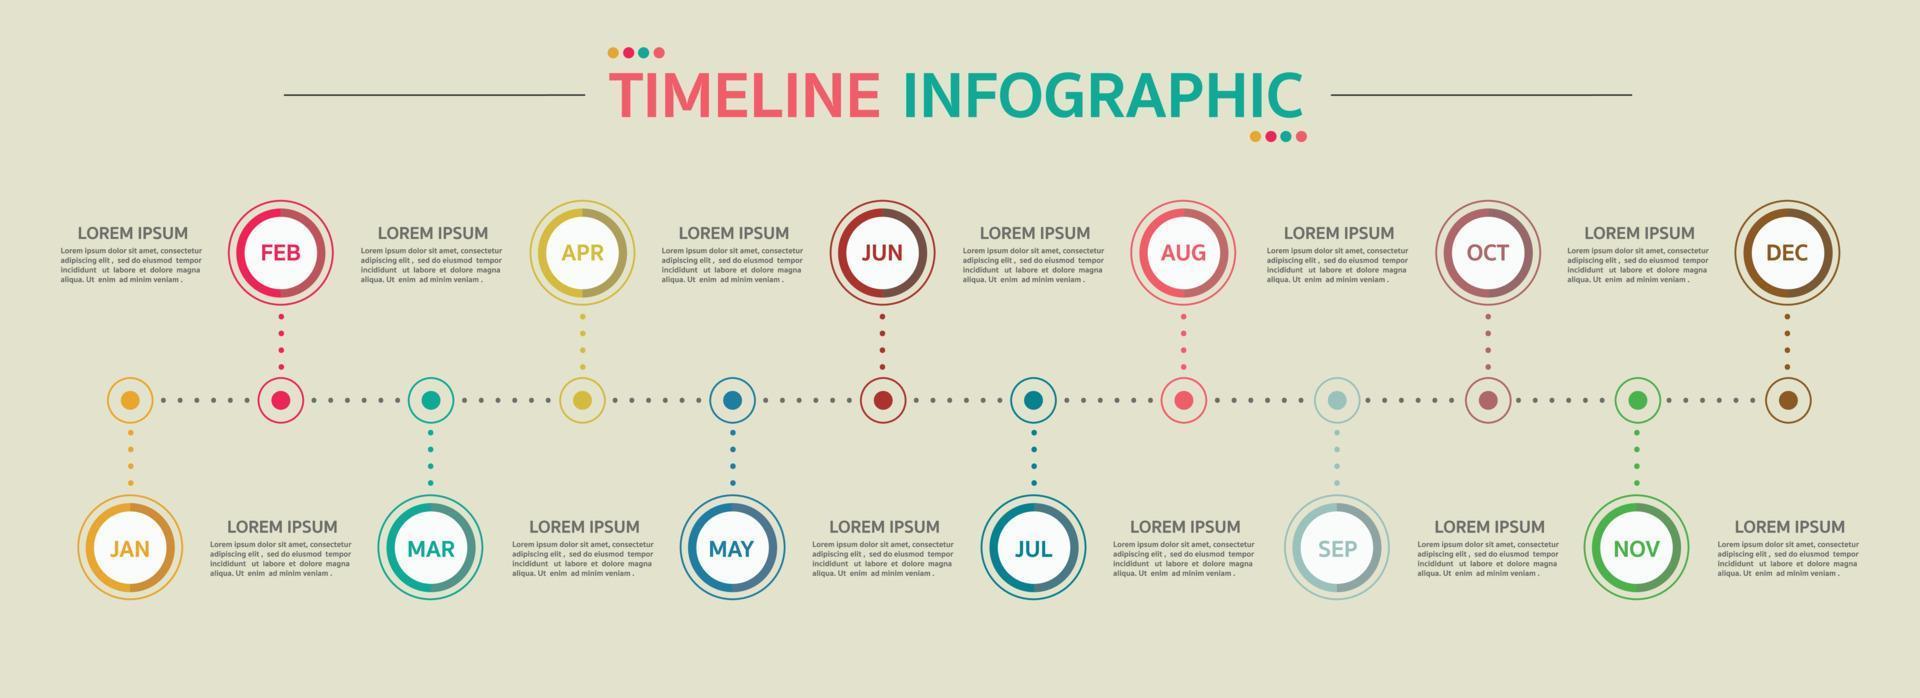 cronograma de 12 meses, plantilla infográfica para empresas. vector